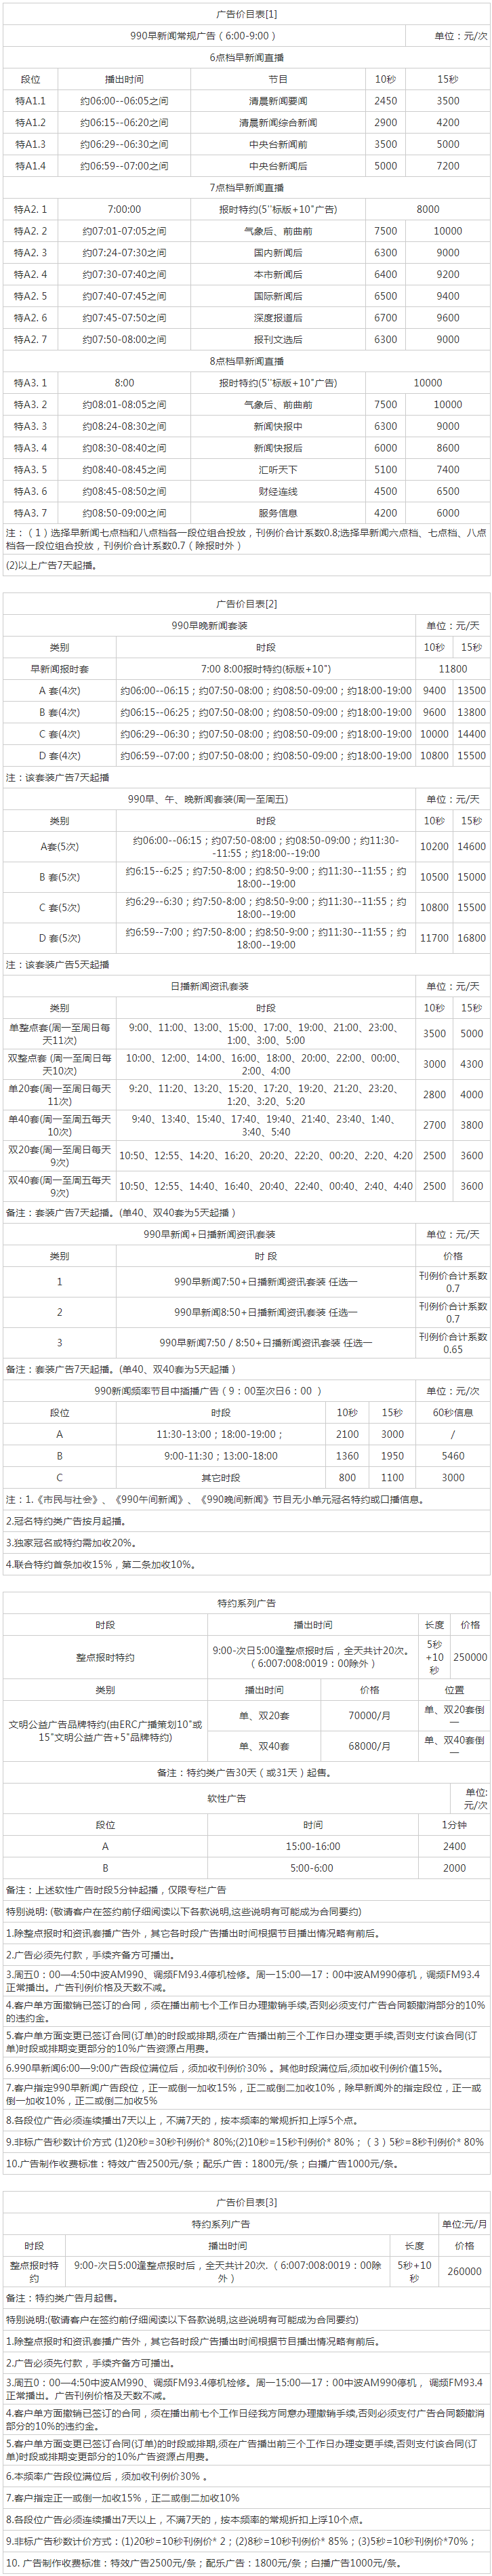 2013上海人民广播电台新闻990 AM990_FM93.4广告报价表.png